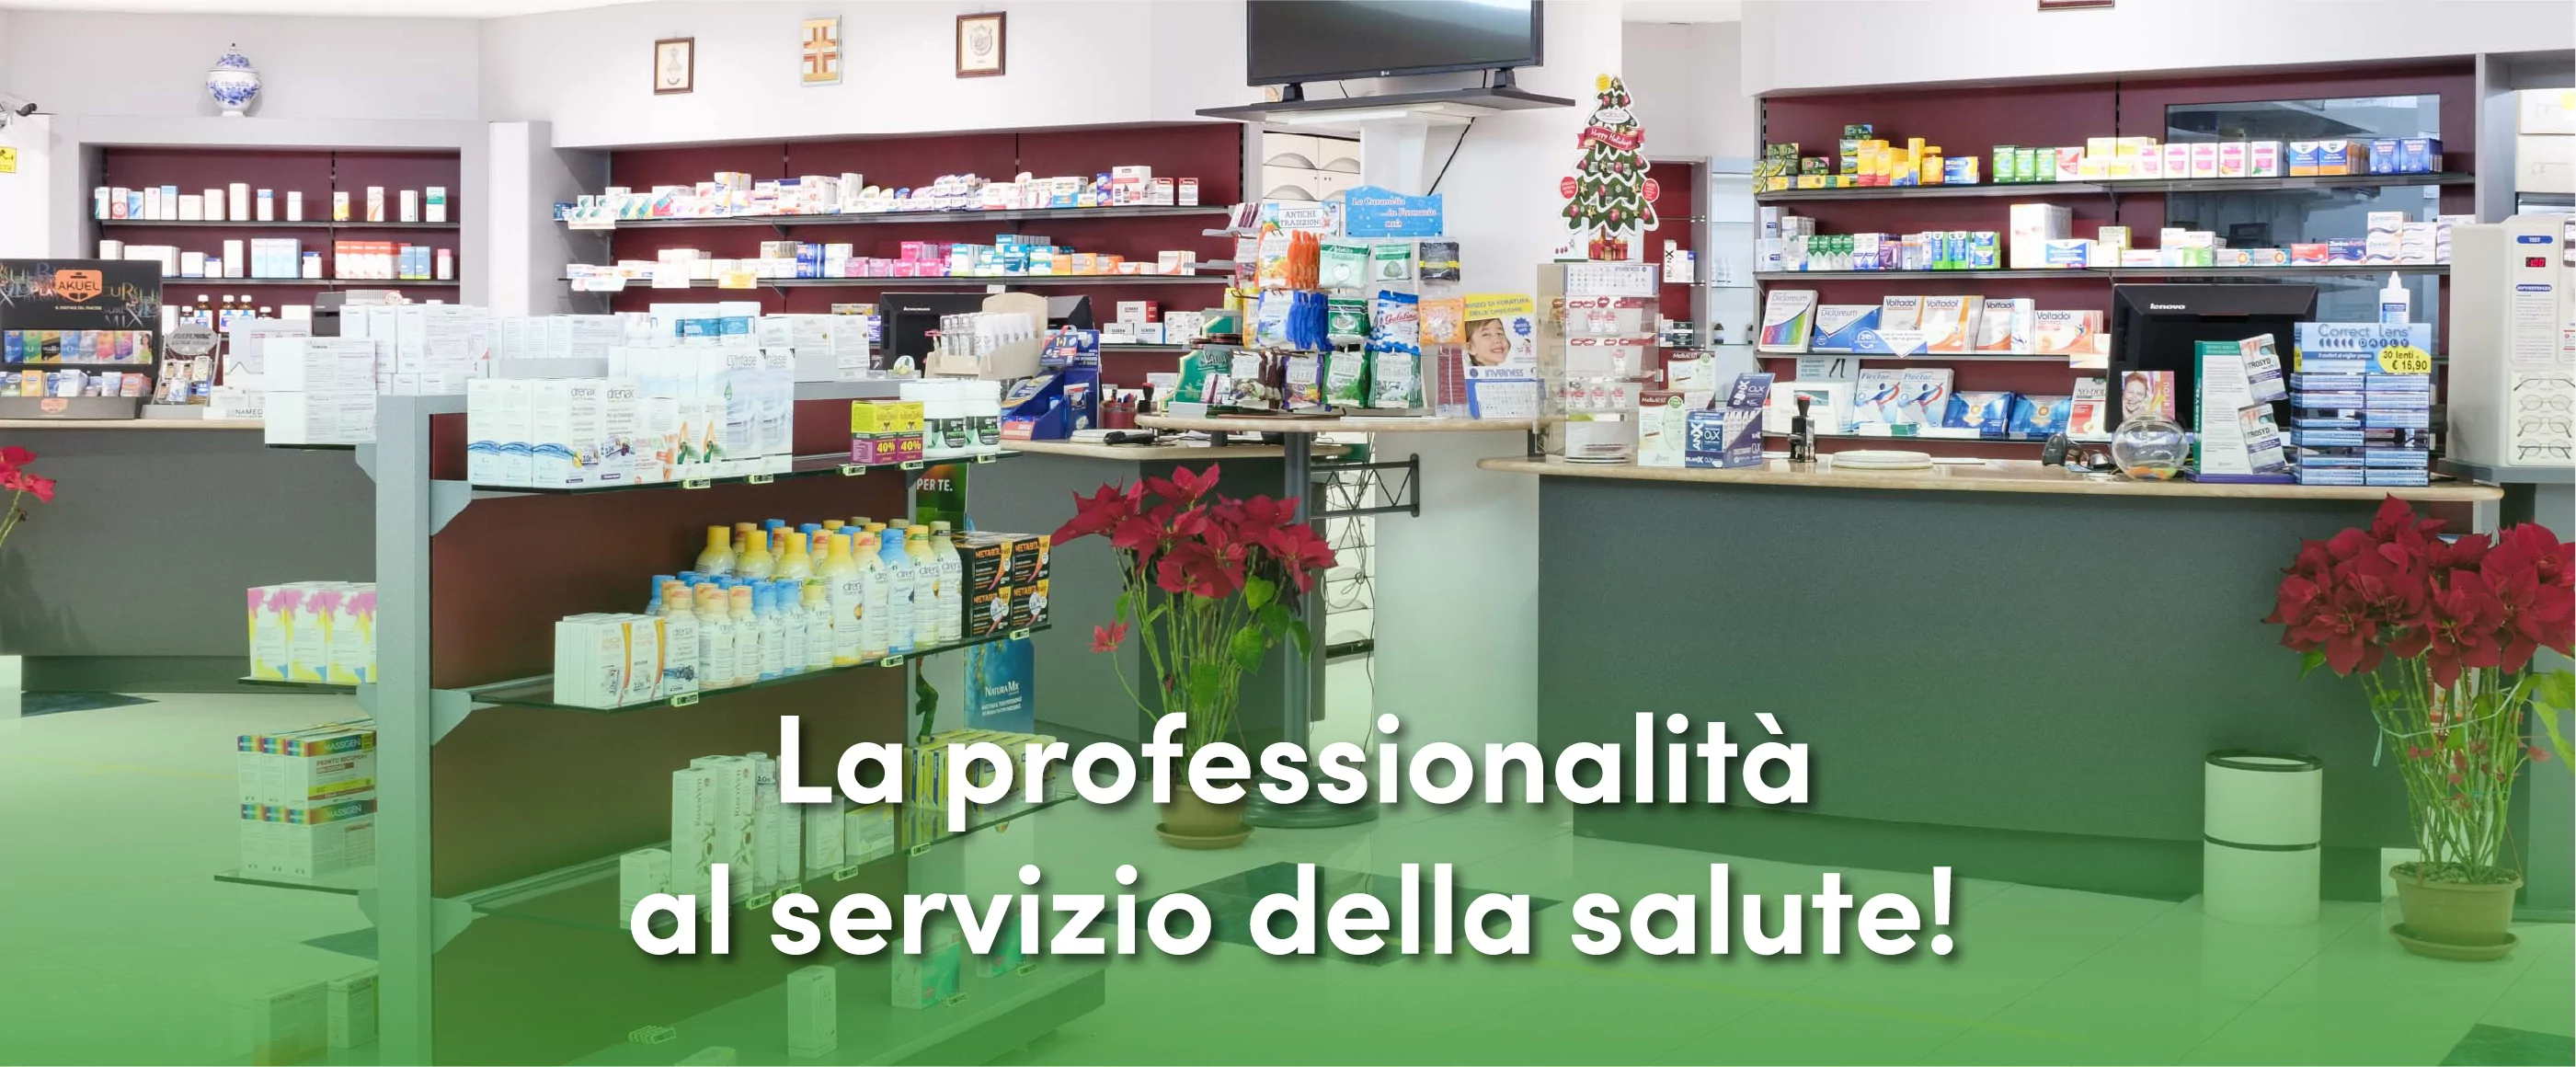 Farmacia Casti - Professionalità al servizio della salute